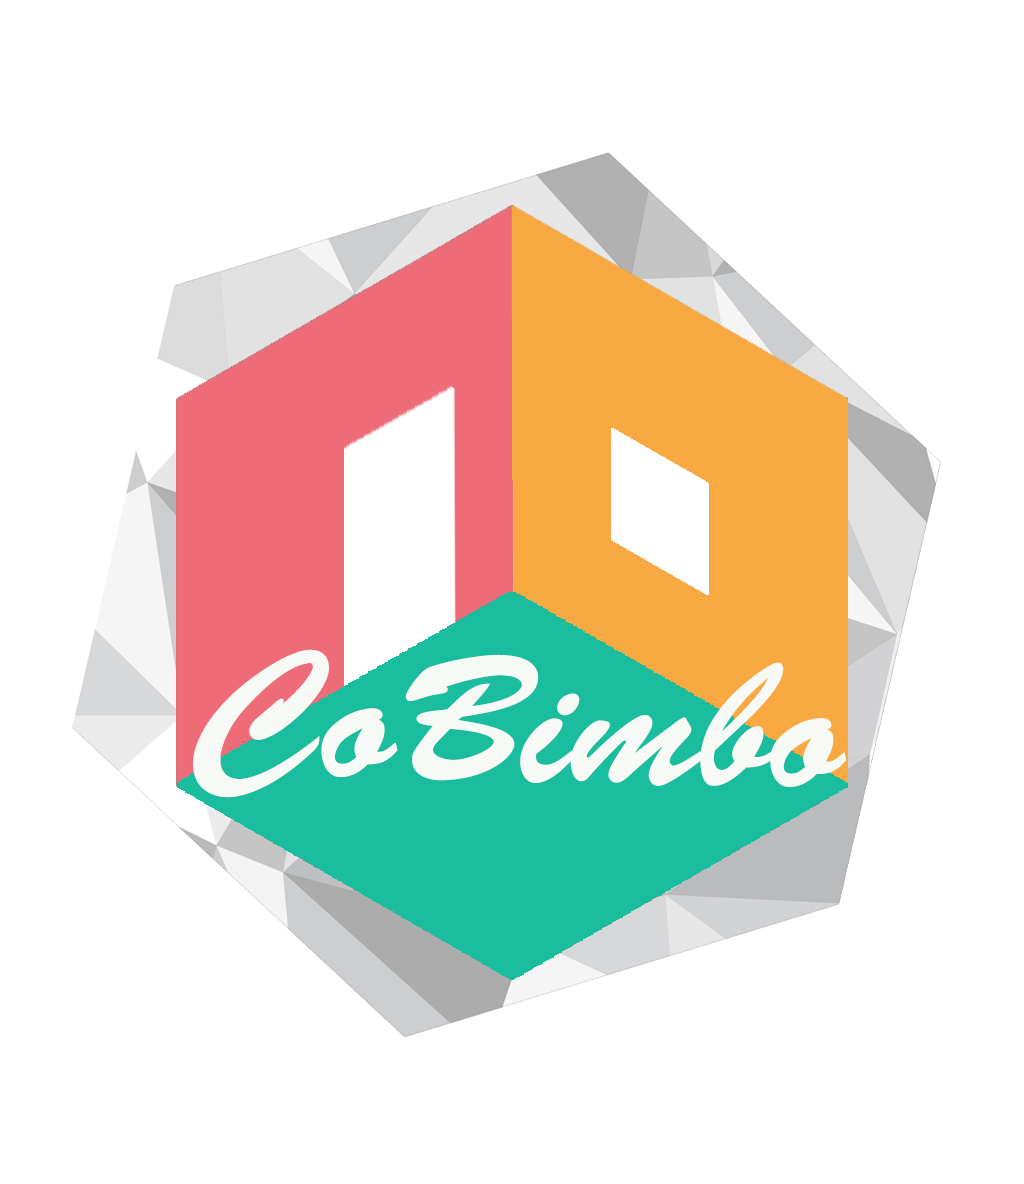 CoBimbo